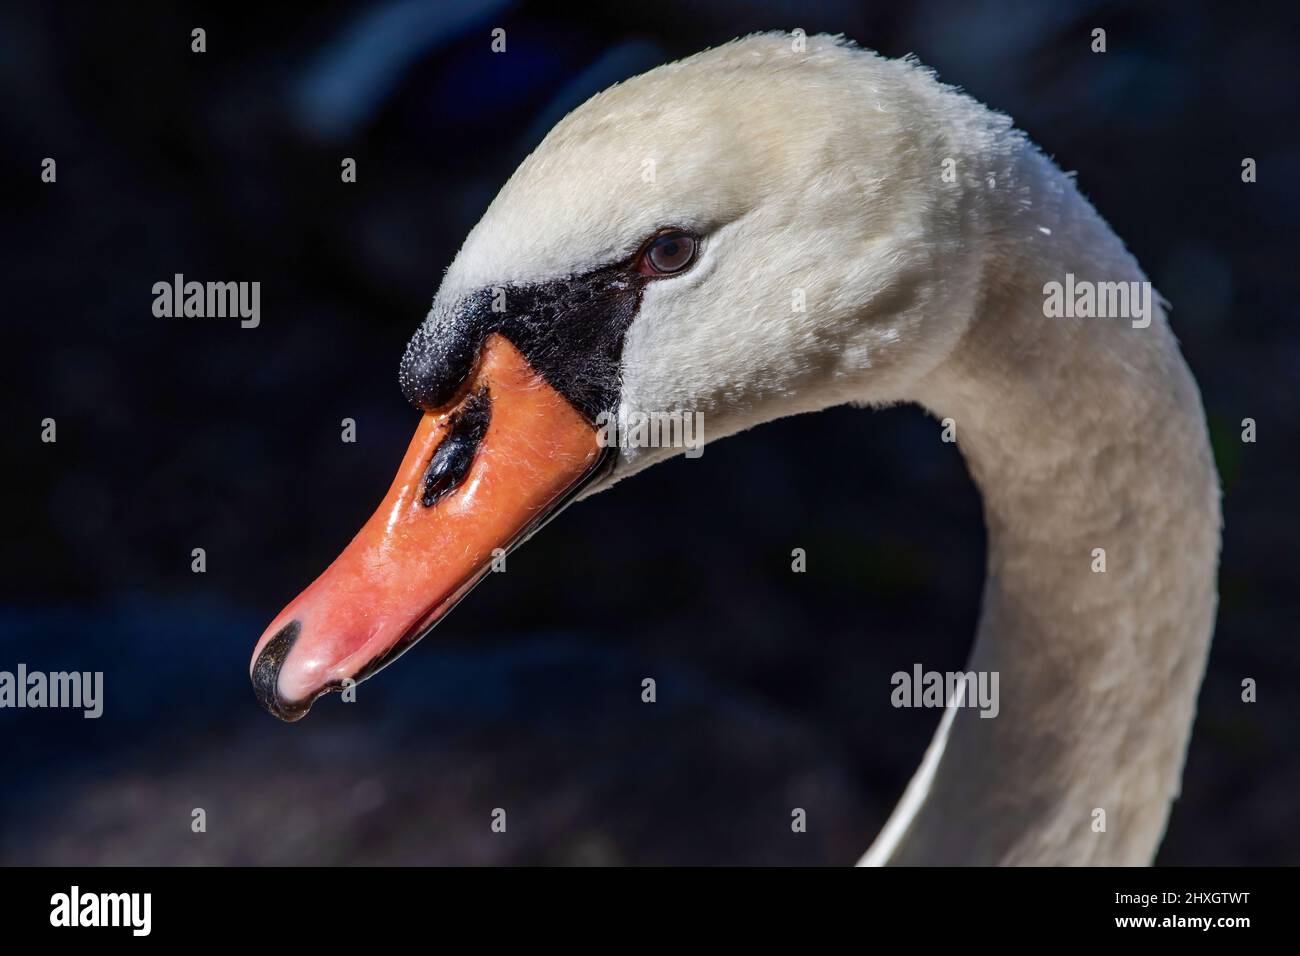 Ein Nahaufnahme-Porträt eines Mute Swan mit einem schönen grauen Auge und schöner Bill-Struktur und Federdetails. Stockfoto